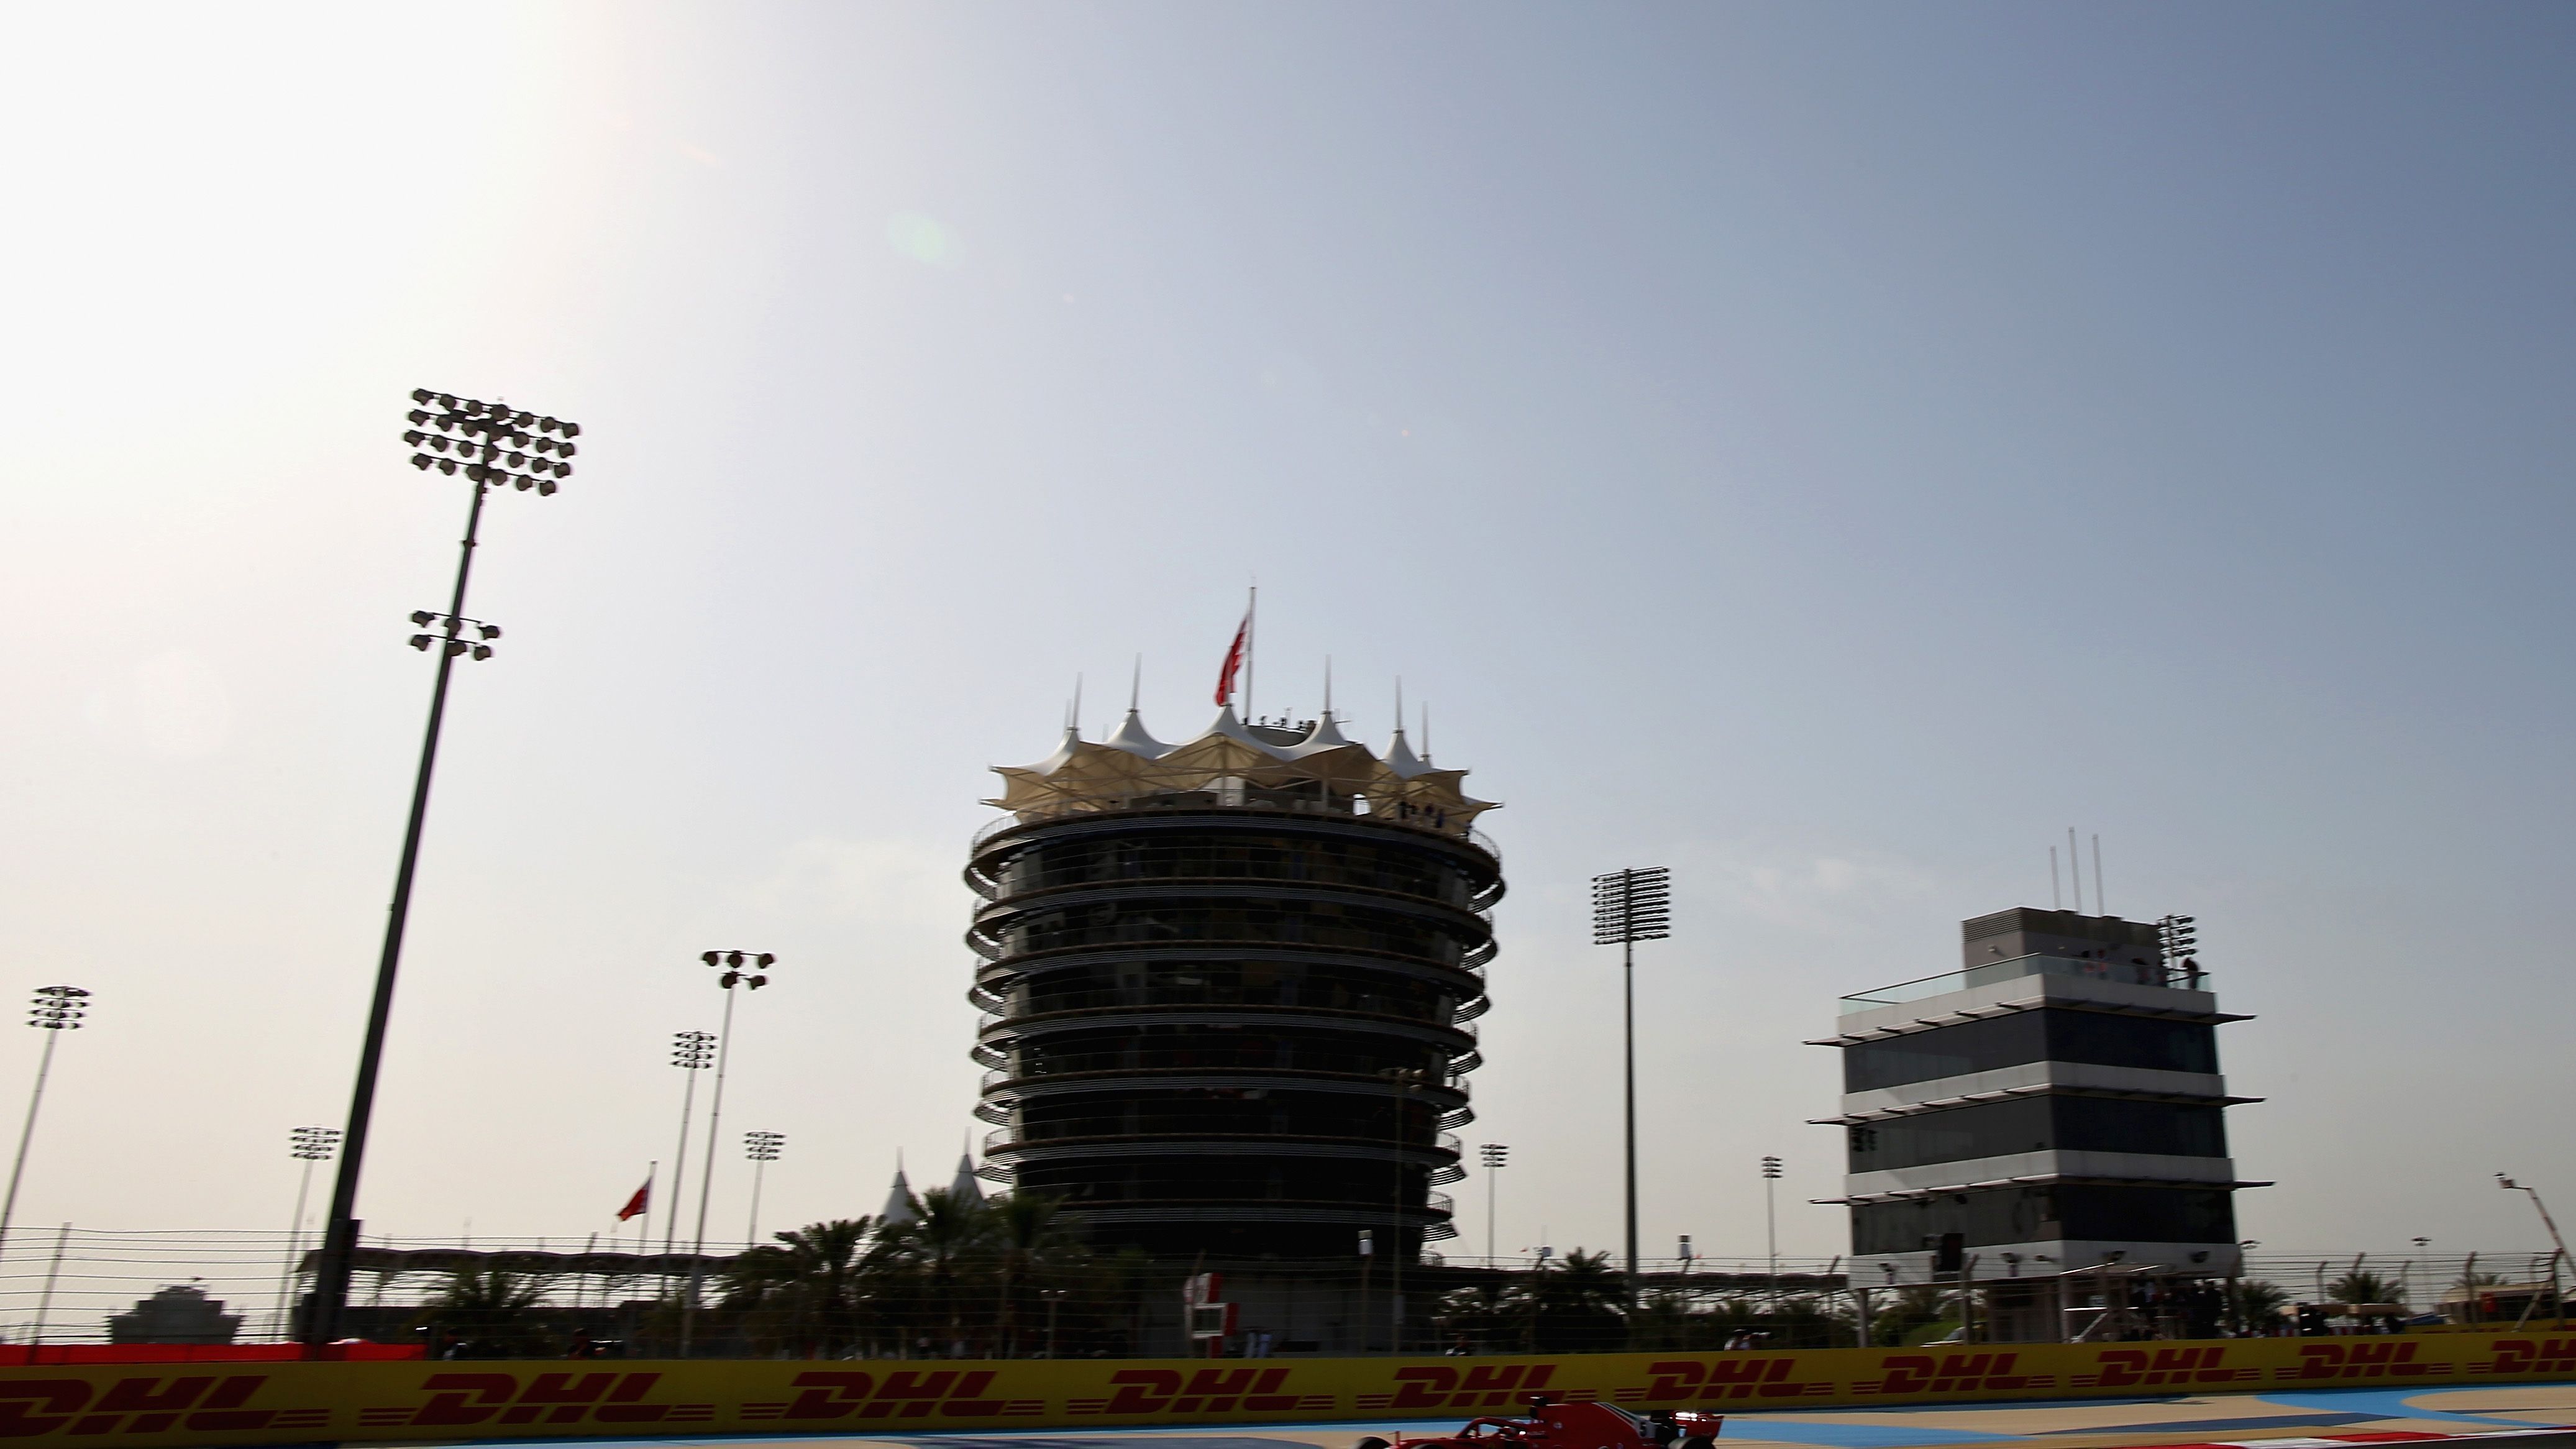 
                <strong>Bahrain International Circuit Sakhir, Bahrain</strong><br>
                Der Große Preis von Bahrain ist seit 2004 im Rennkalder der Motorsport-Königsklasse vertreten. Das Premieren-Rennen gewann damals Rekord-Weltmeister Michael Schumacher. Seit 2014 ist die erste Kurve des Kurses auch nach Schumi benannt. Der 5,4 Kilometer lange Wüstenkurs wurde vom deutschen Bauingenieur Hermann Tilke geplant. Im Jahr 2010 wurde der Circuit auf 6,299 Kilometer erweitert. Wegen des arabischen Frühlings fehlte der Kurs im Jahr 2011 im Rennkalender und ist seit 2012 wieder fester Bestandteil des Formel 1-Fahrplans. Mit vier Siegen ist Sebastian Vettel Rekordsieger in Bahrain. Feiern durfte er das aber immer nur mit Rosenwasser, denn in Bahrain herrscht strenges Alkoholverbot. Durch die Lage in der Wüste, kann es zu Sandverwehungen auf der Strecke kommen, die zu Rennunterbrechungen führen könnten. Ein spezielles Spray auf den Sand um die Strecke herumsoll dem etwas entgegen wirken. 2007 wurden außerdem die Auslaufzonen aus Sand durch eine sandfarbige Asphaltschicht ersetzt. Auch spezielle Luftfilter kommen in dem arabischen Königreich zum Einsatz eingesetzt, um die Fahrzeuge und Motoren vor dem Sand zu schützen.
              